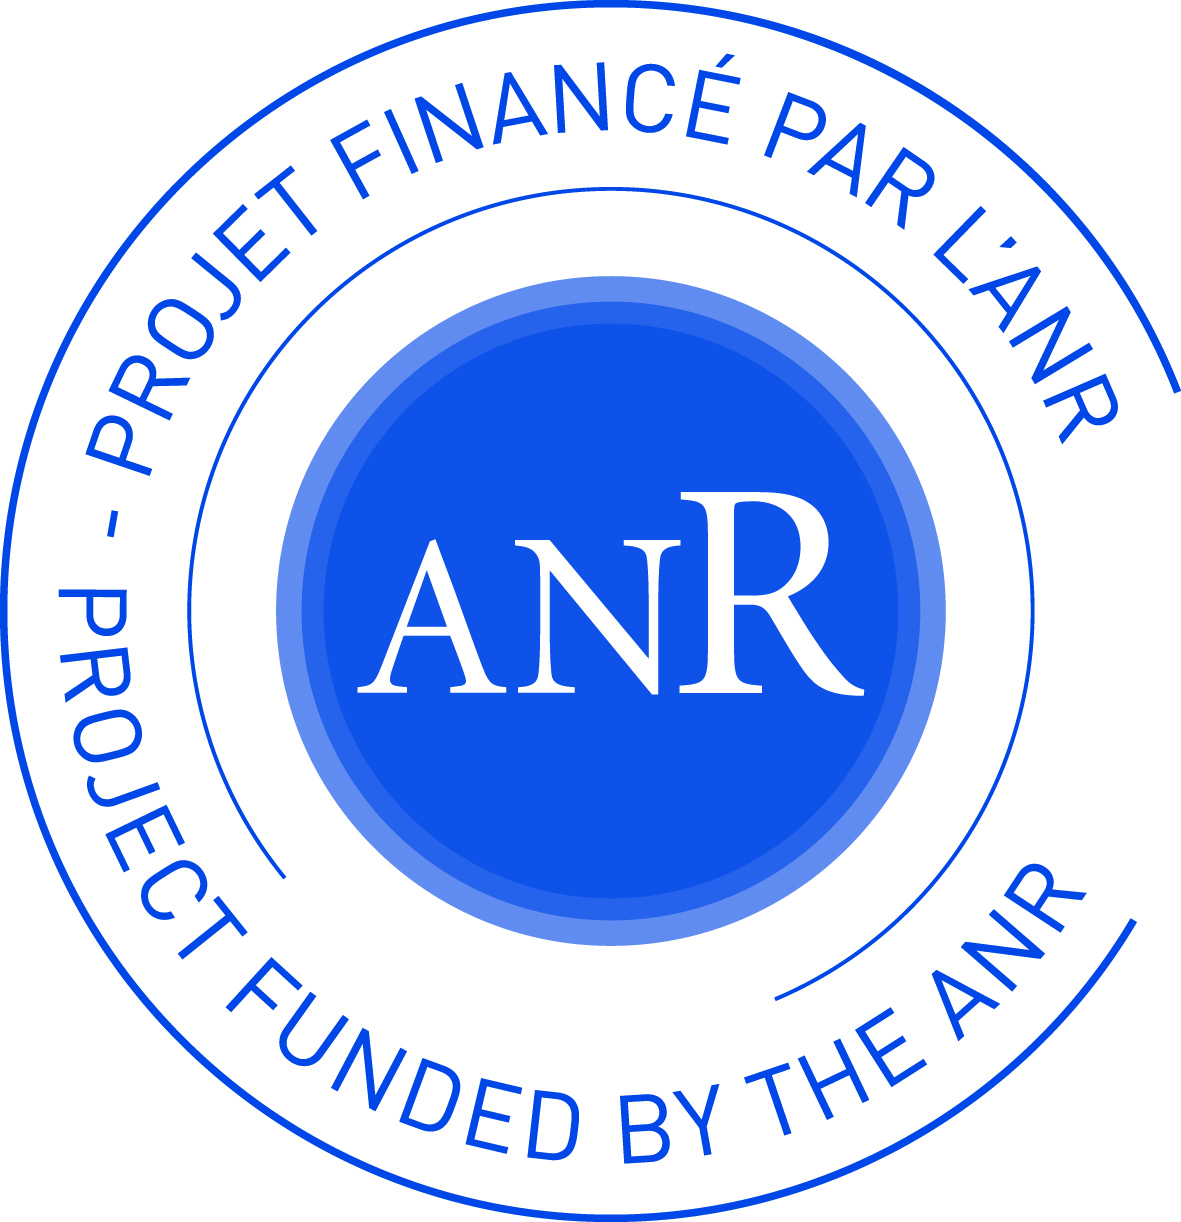 ANR AAPG 2021 : le projet ScientIA (48 mois) coordonné par Floriana Gargiulo sélectionné par l’Agence Nationale de la Recherche dans le cadre de l’appel générique 2021